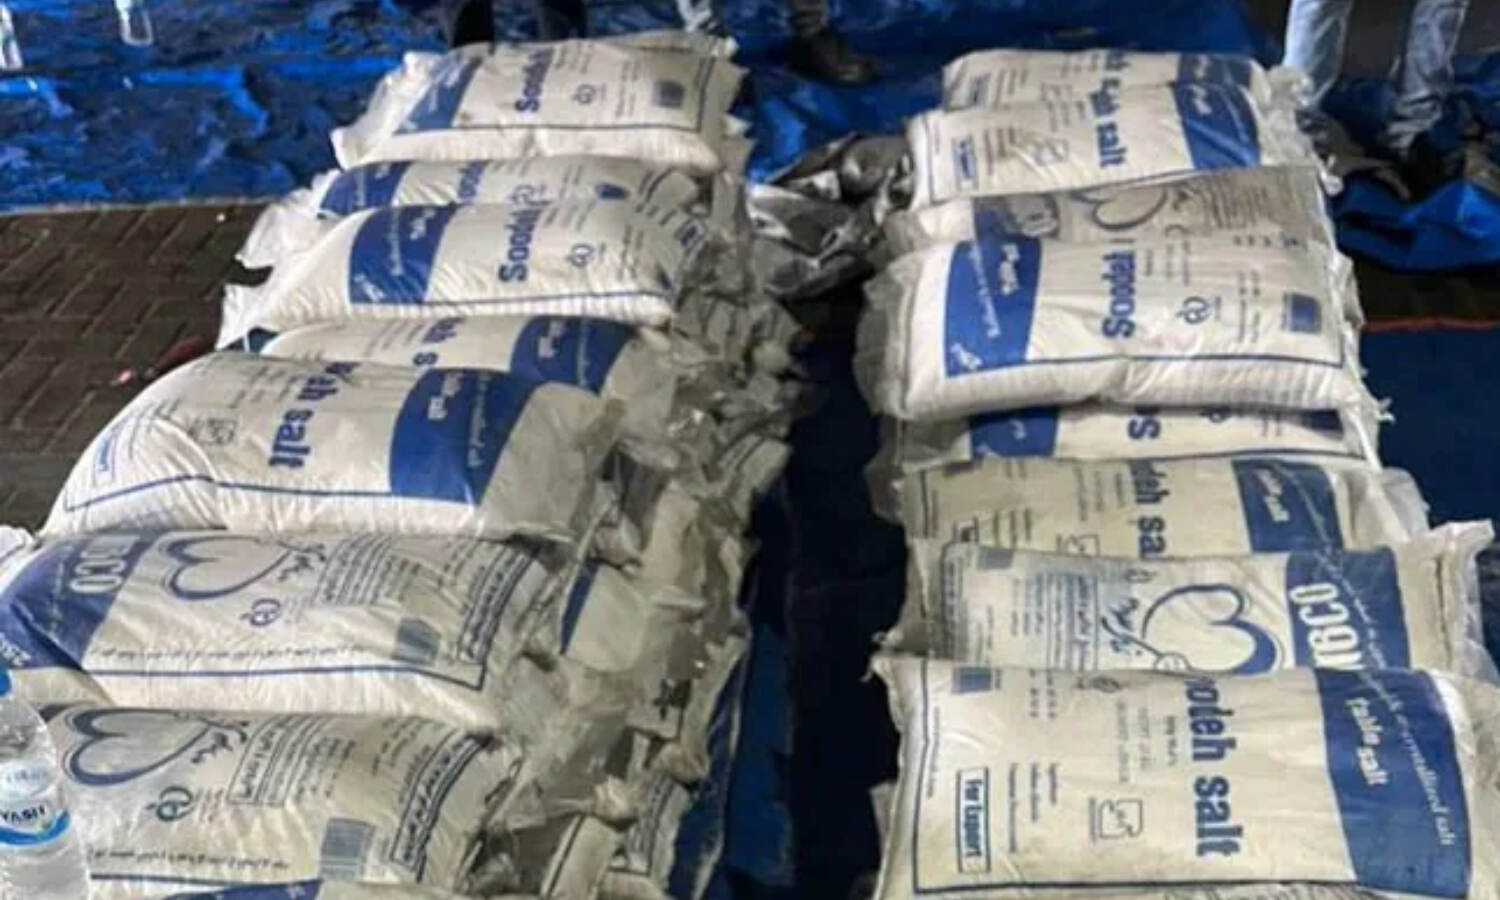 Cocaine Seized at Mundra Port : नमक बताकर ईरान से भारत लायी गयी थी ₹500 करोड़ की कोकीन, DRI ने अडाणी के मुंद्रा पोर्ट से किया जब्त